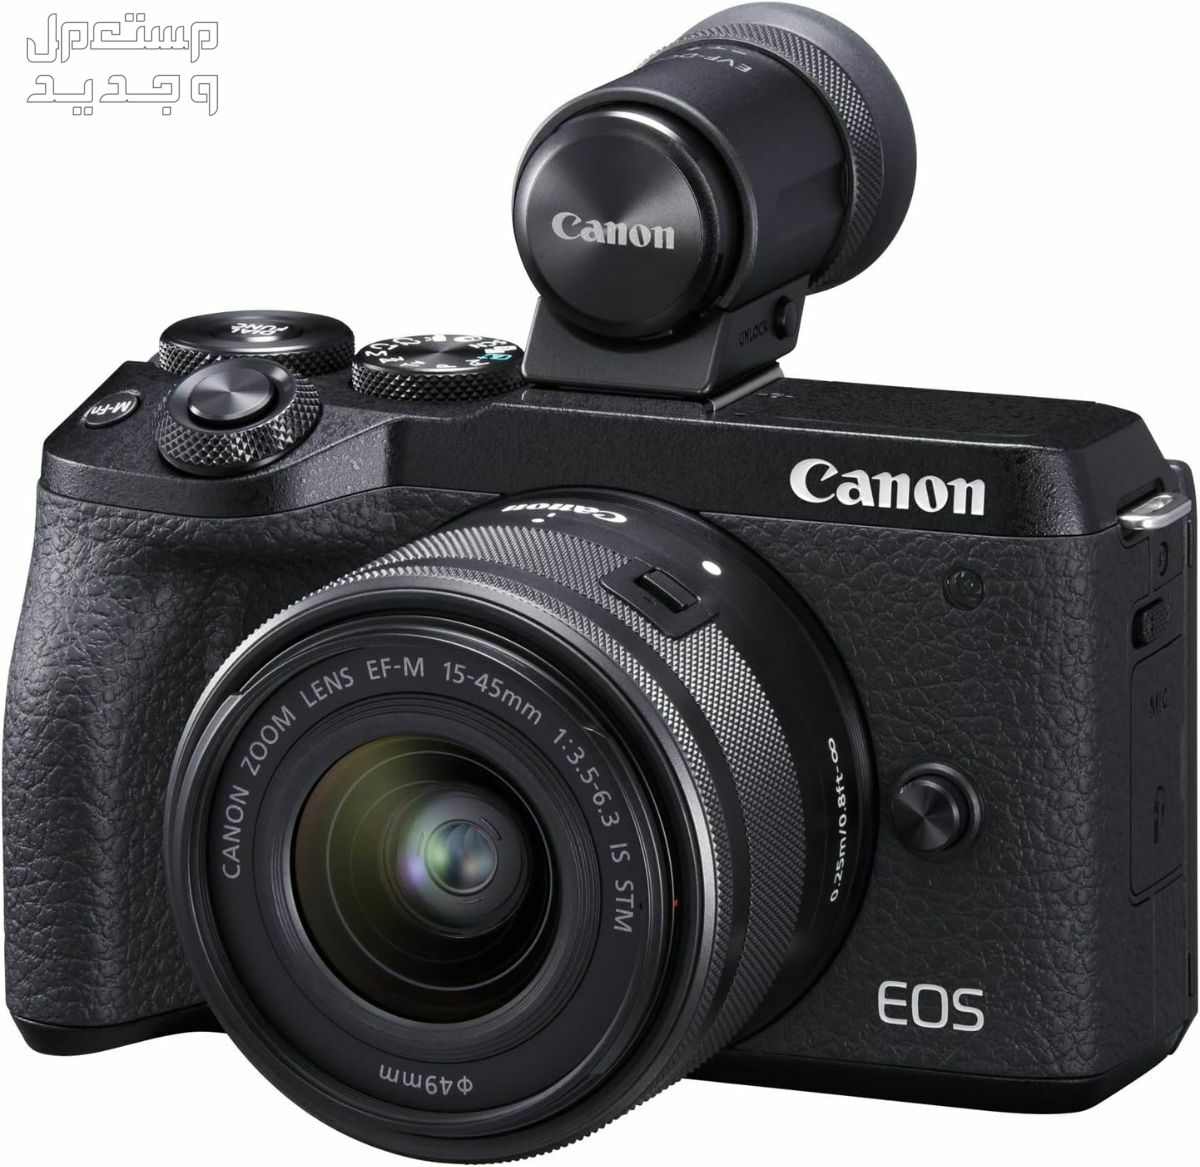 سعر ومميزات ومواصفات أرخص 5 كاميرات تصوير من كانون في لبنان كاميرا Canon EOS M6 Mark II